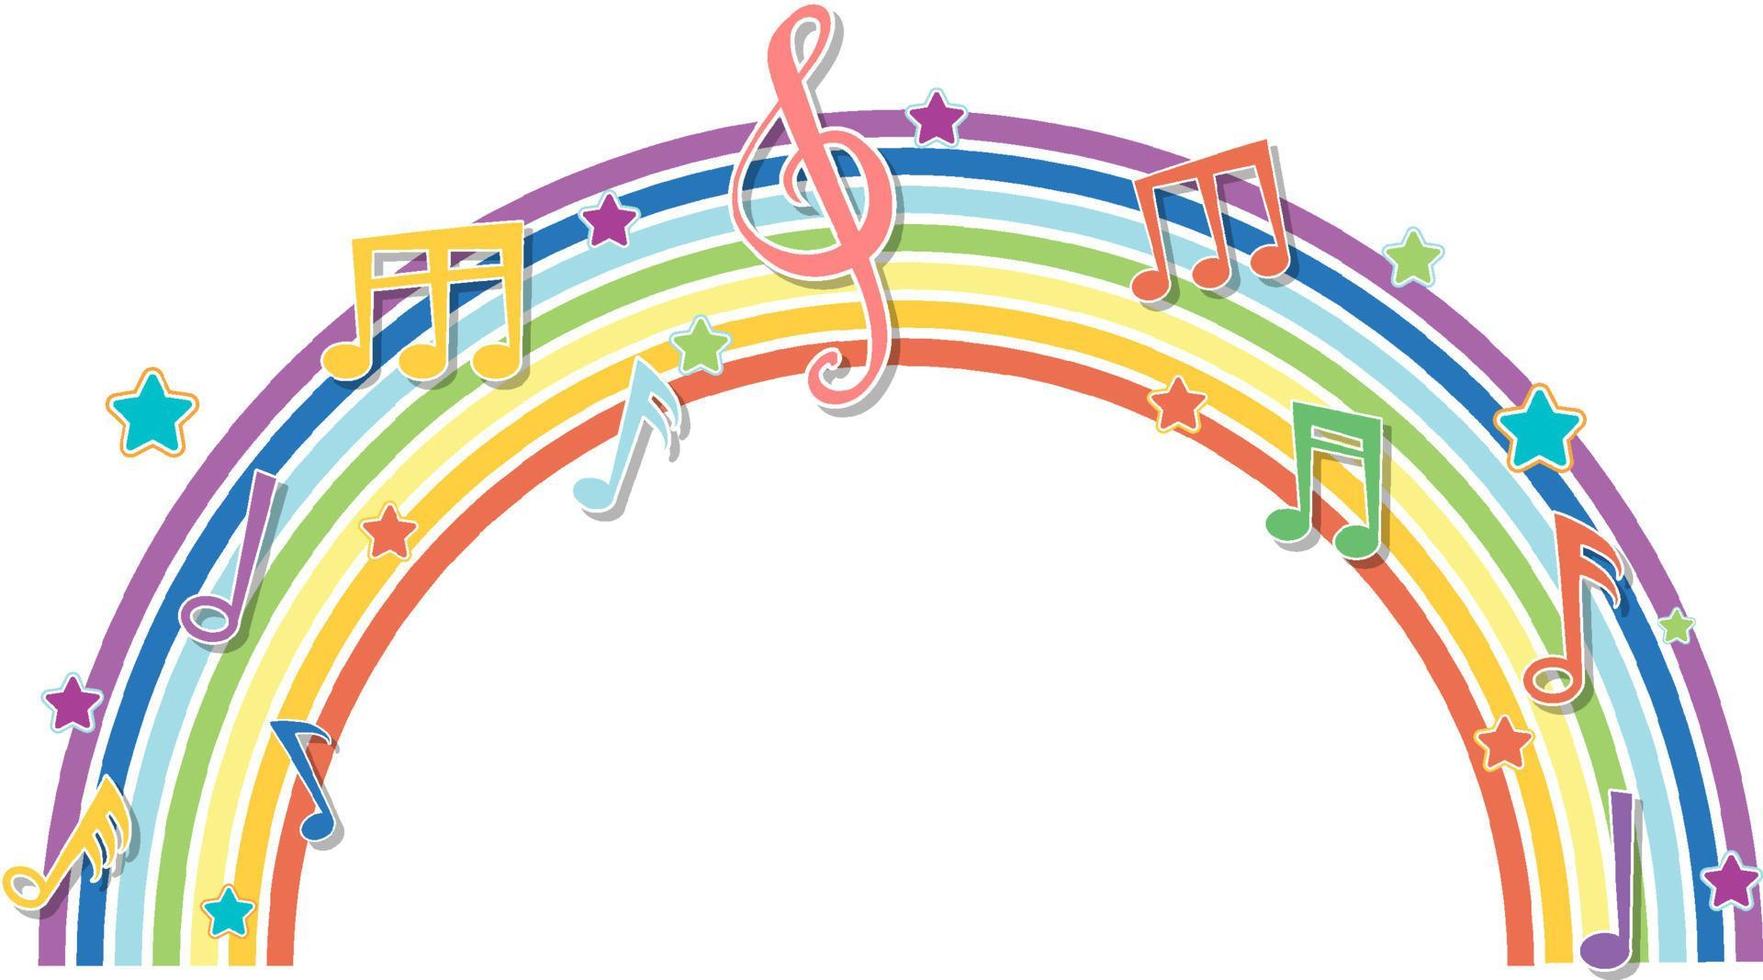 regenboog met symbolen voor muziekmelodie vector